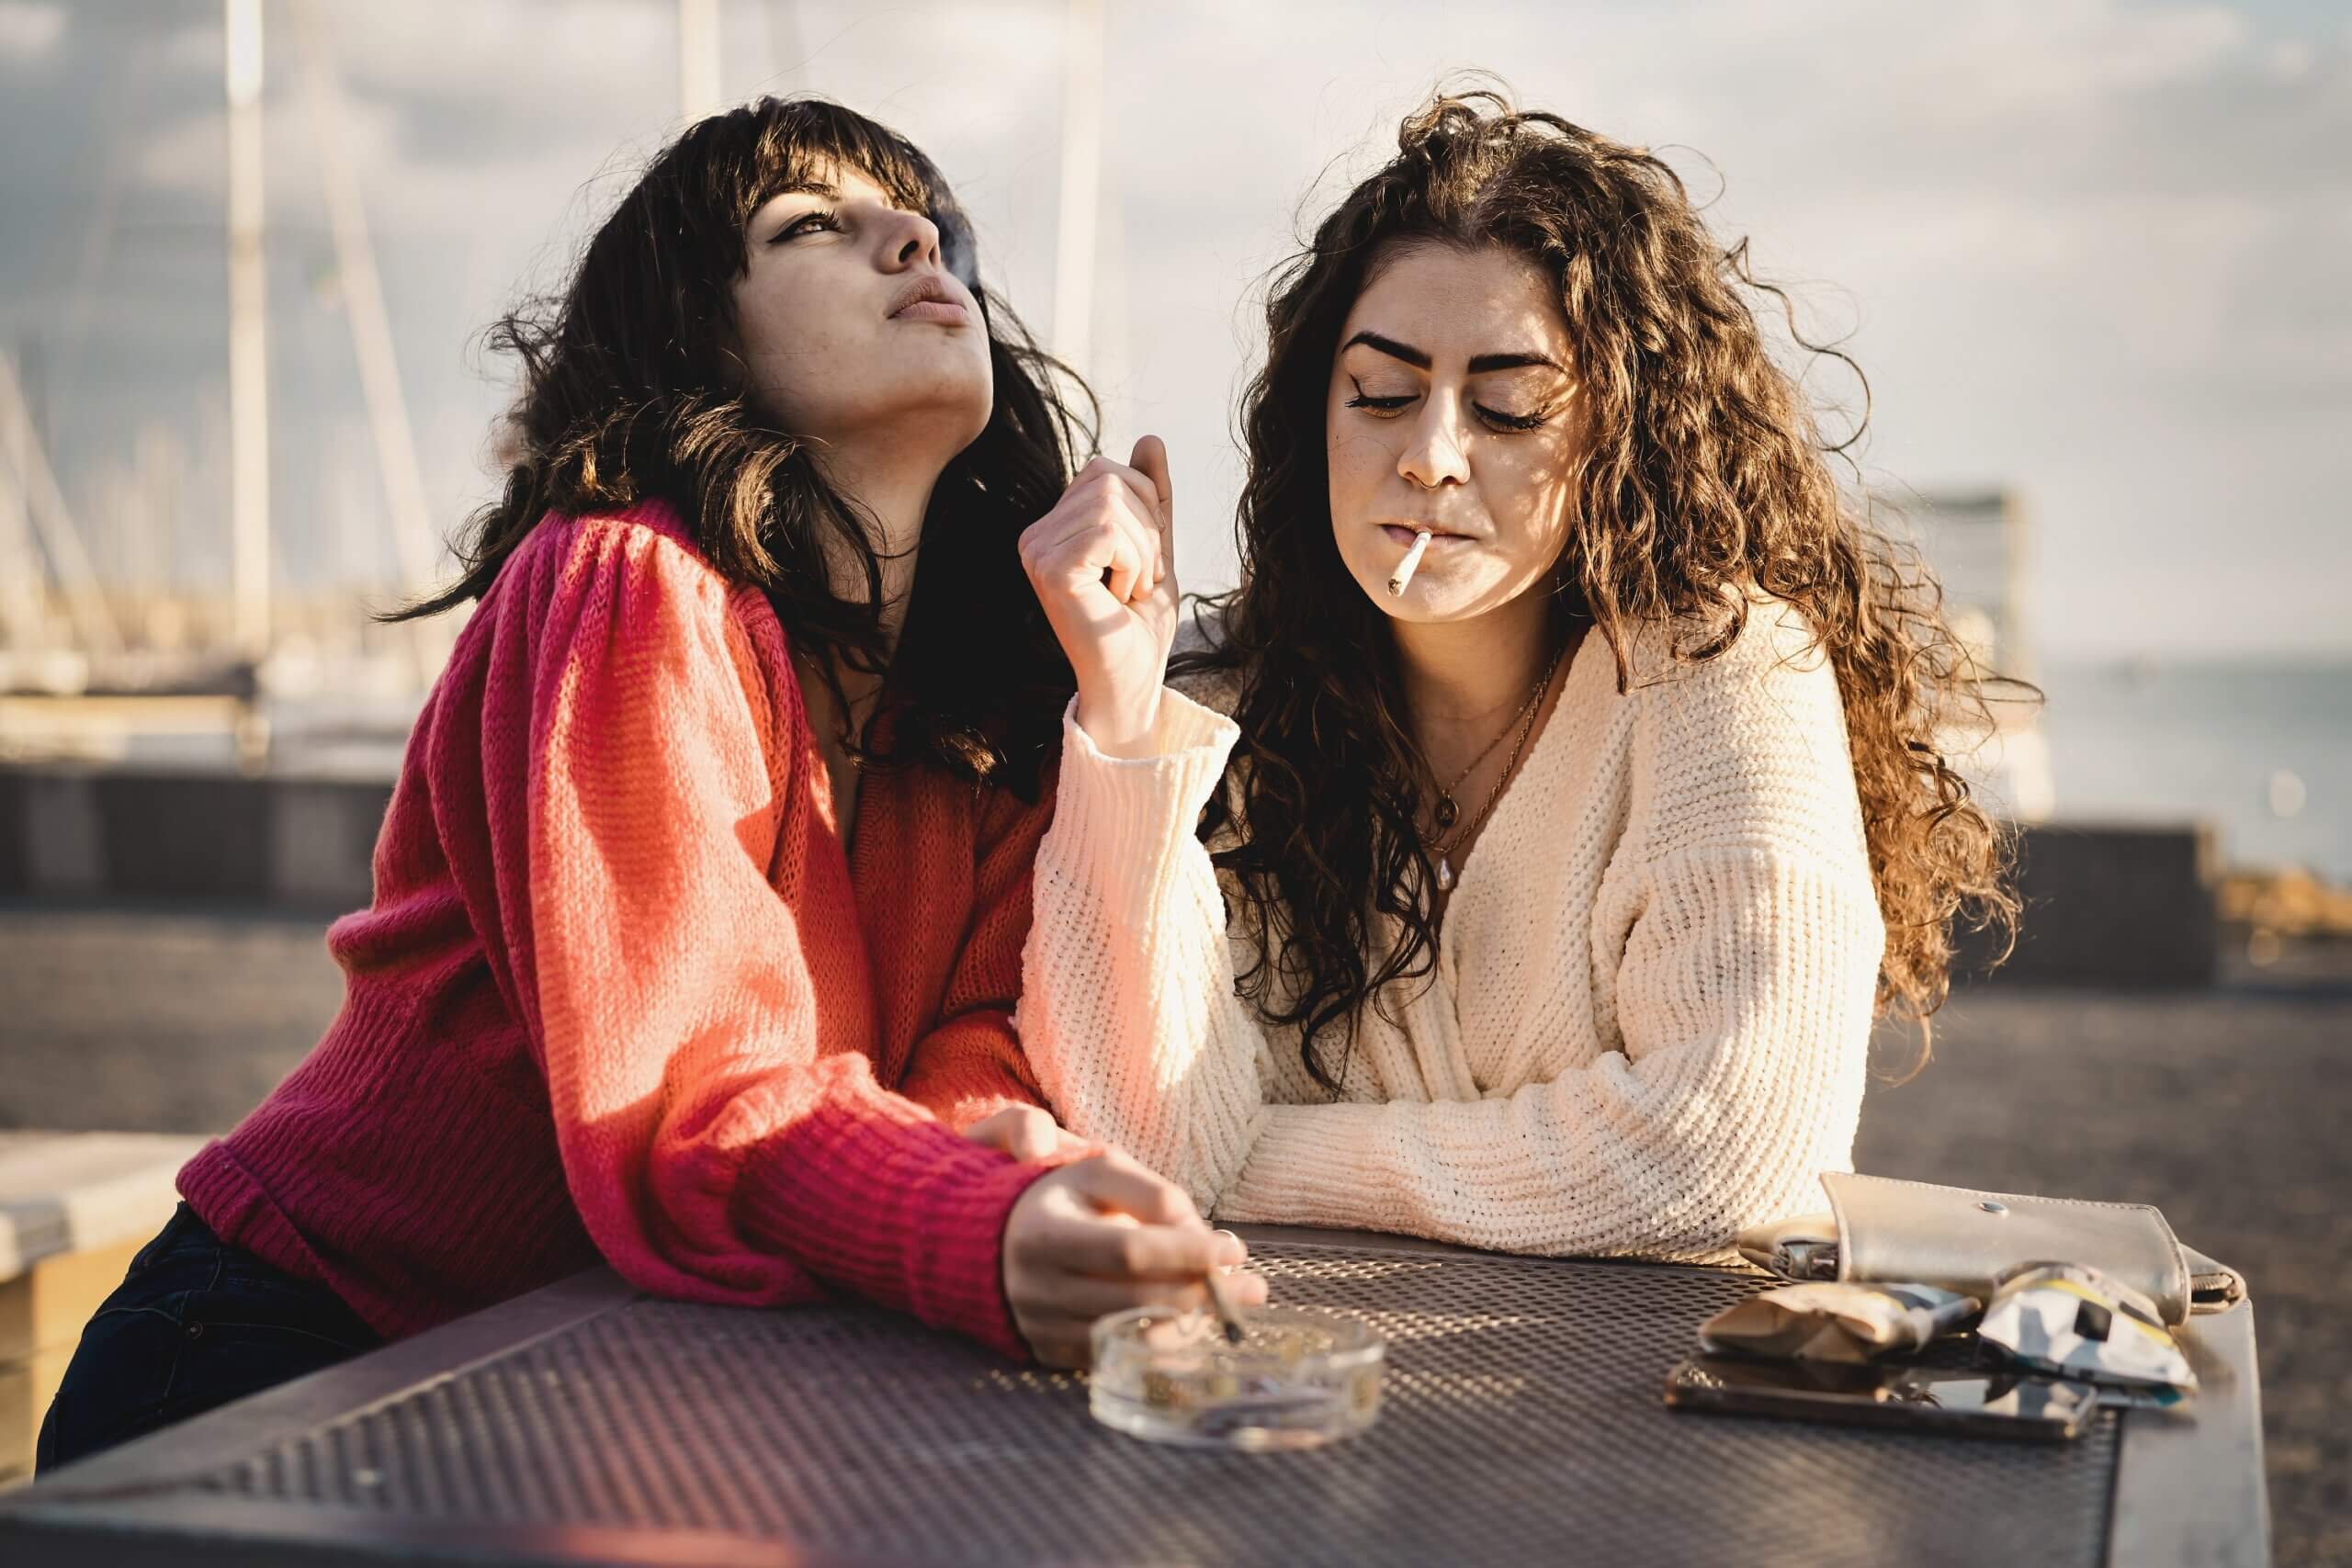 Two women smoking.